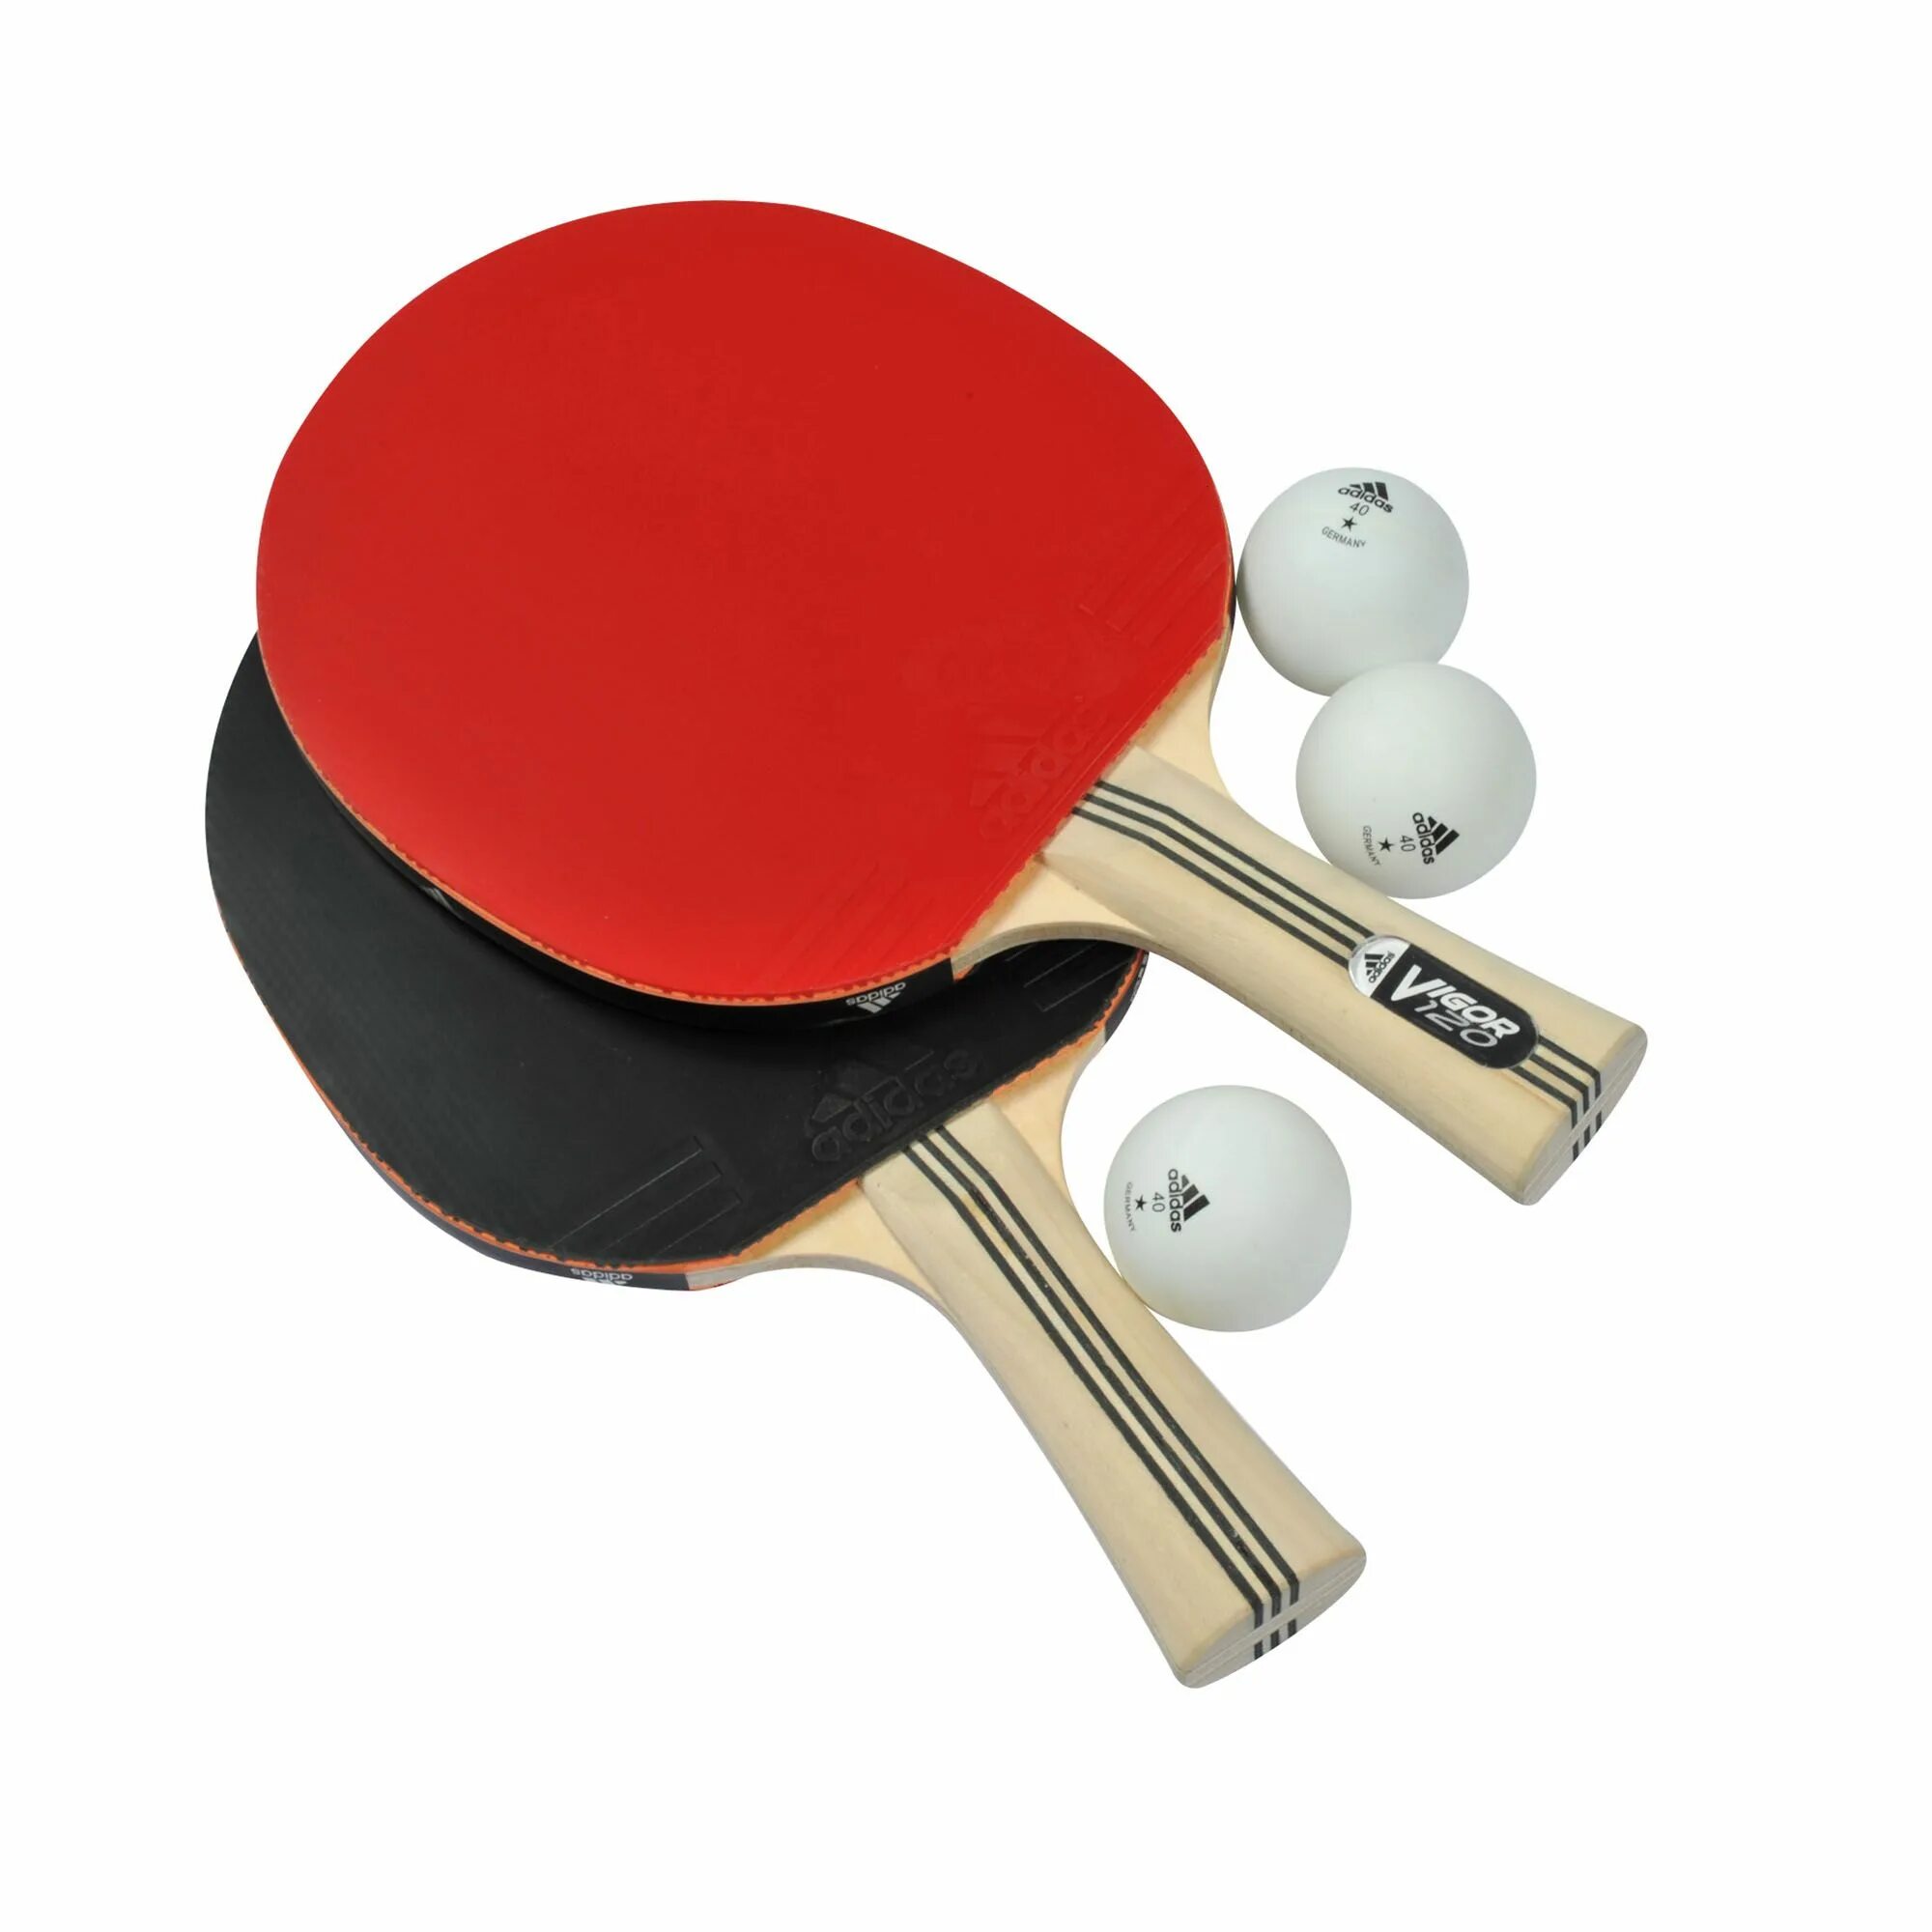 Ракетка адидас для настольного тенниса Vigor 120. Ракетка адидас для настольного тенниса. ТТ спорт настольный теннис. Table Tennis Racket набор.